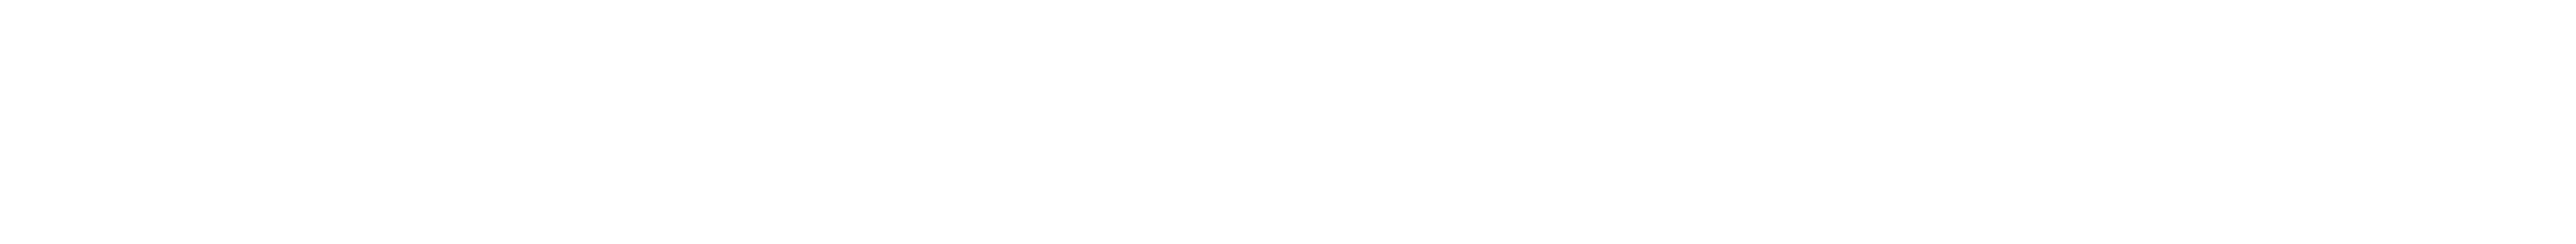 white bottom shape divider